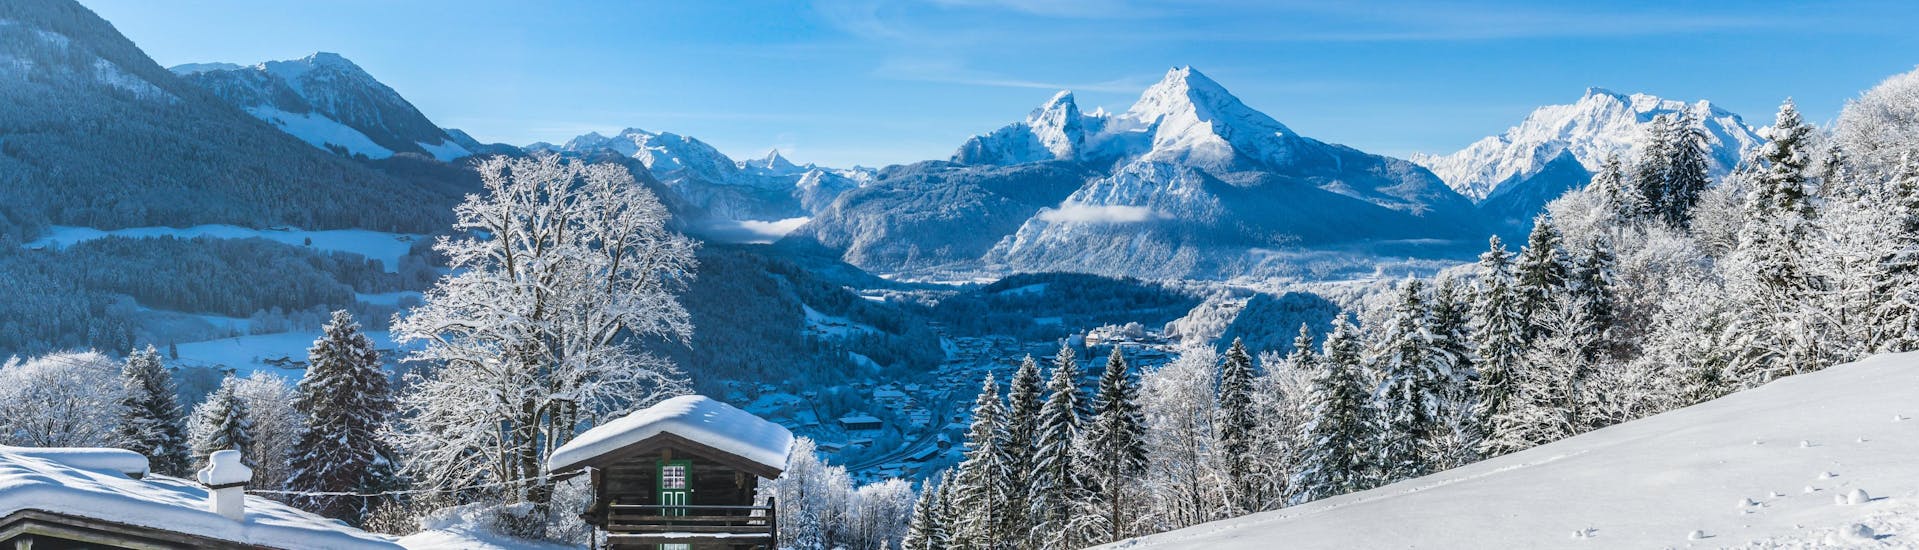 Ein Blick über die verträumte Winterlandschaft in Ramsau - Hochschwarzeck im Berchtesgadener Land, einem beliebten deutschen Skigebiet in dem Besucher bei einer der örtlichen Skischulen Skikurse buchen können.